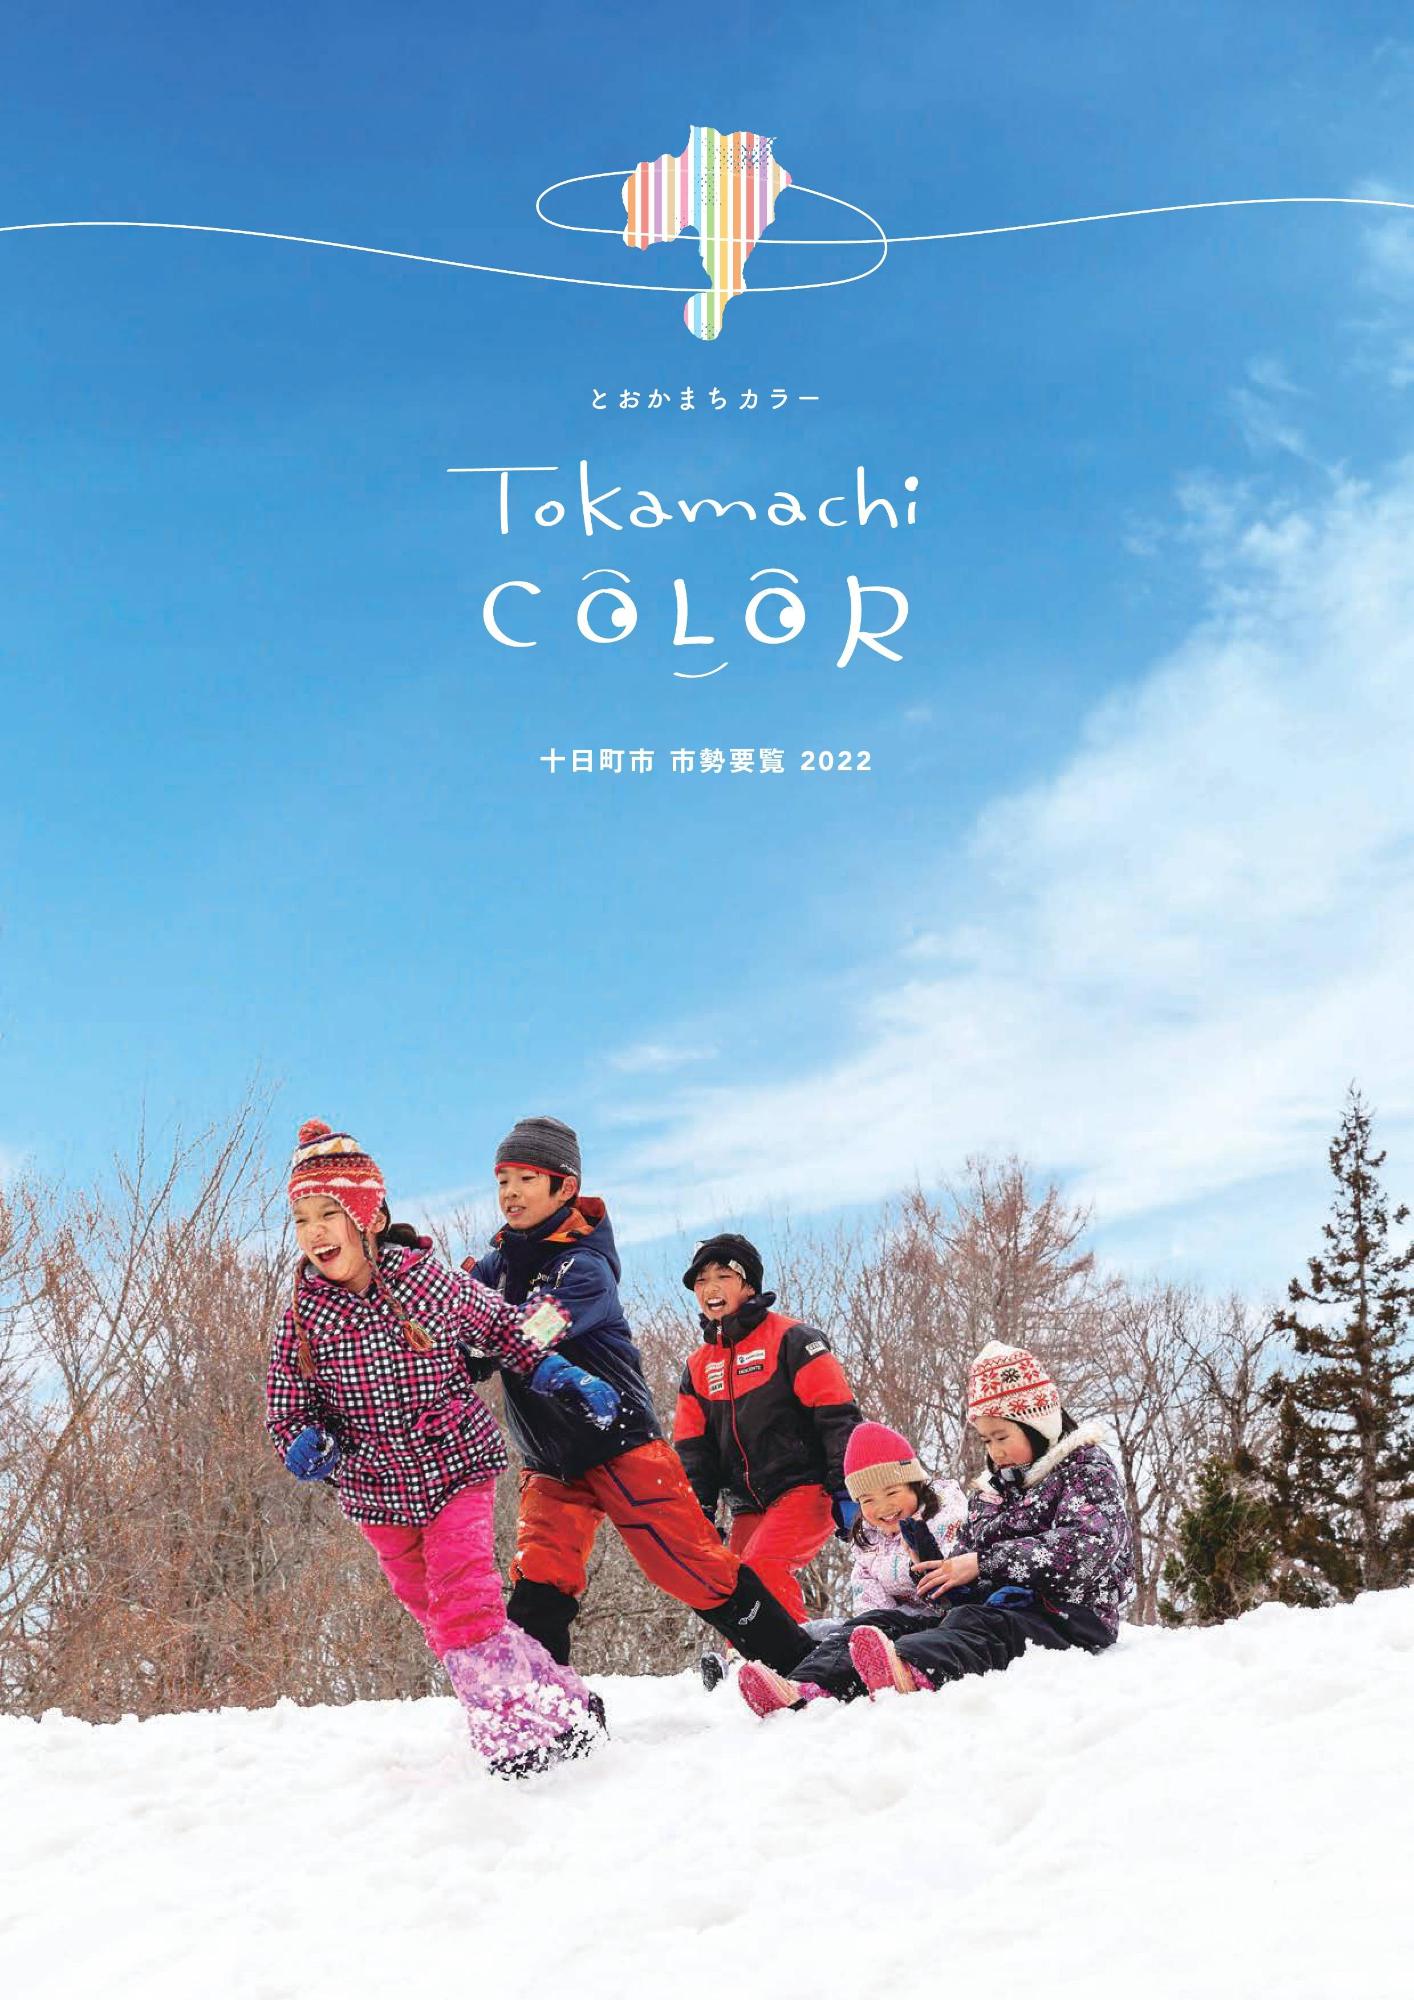 青空の下、雪の上で5人の子どもたちが雪遊びをしている（市勢要覧の表紙）